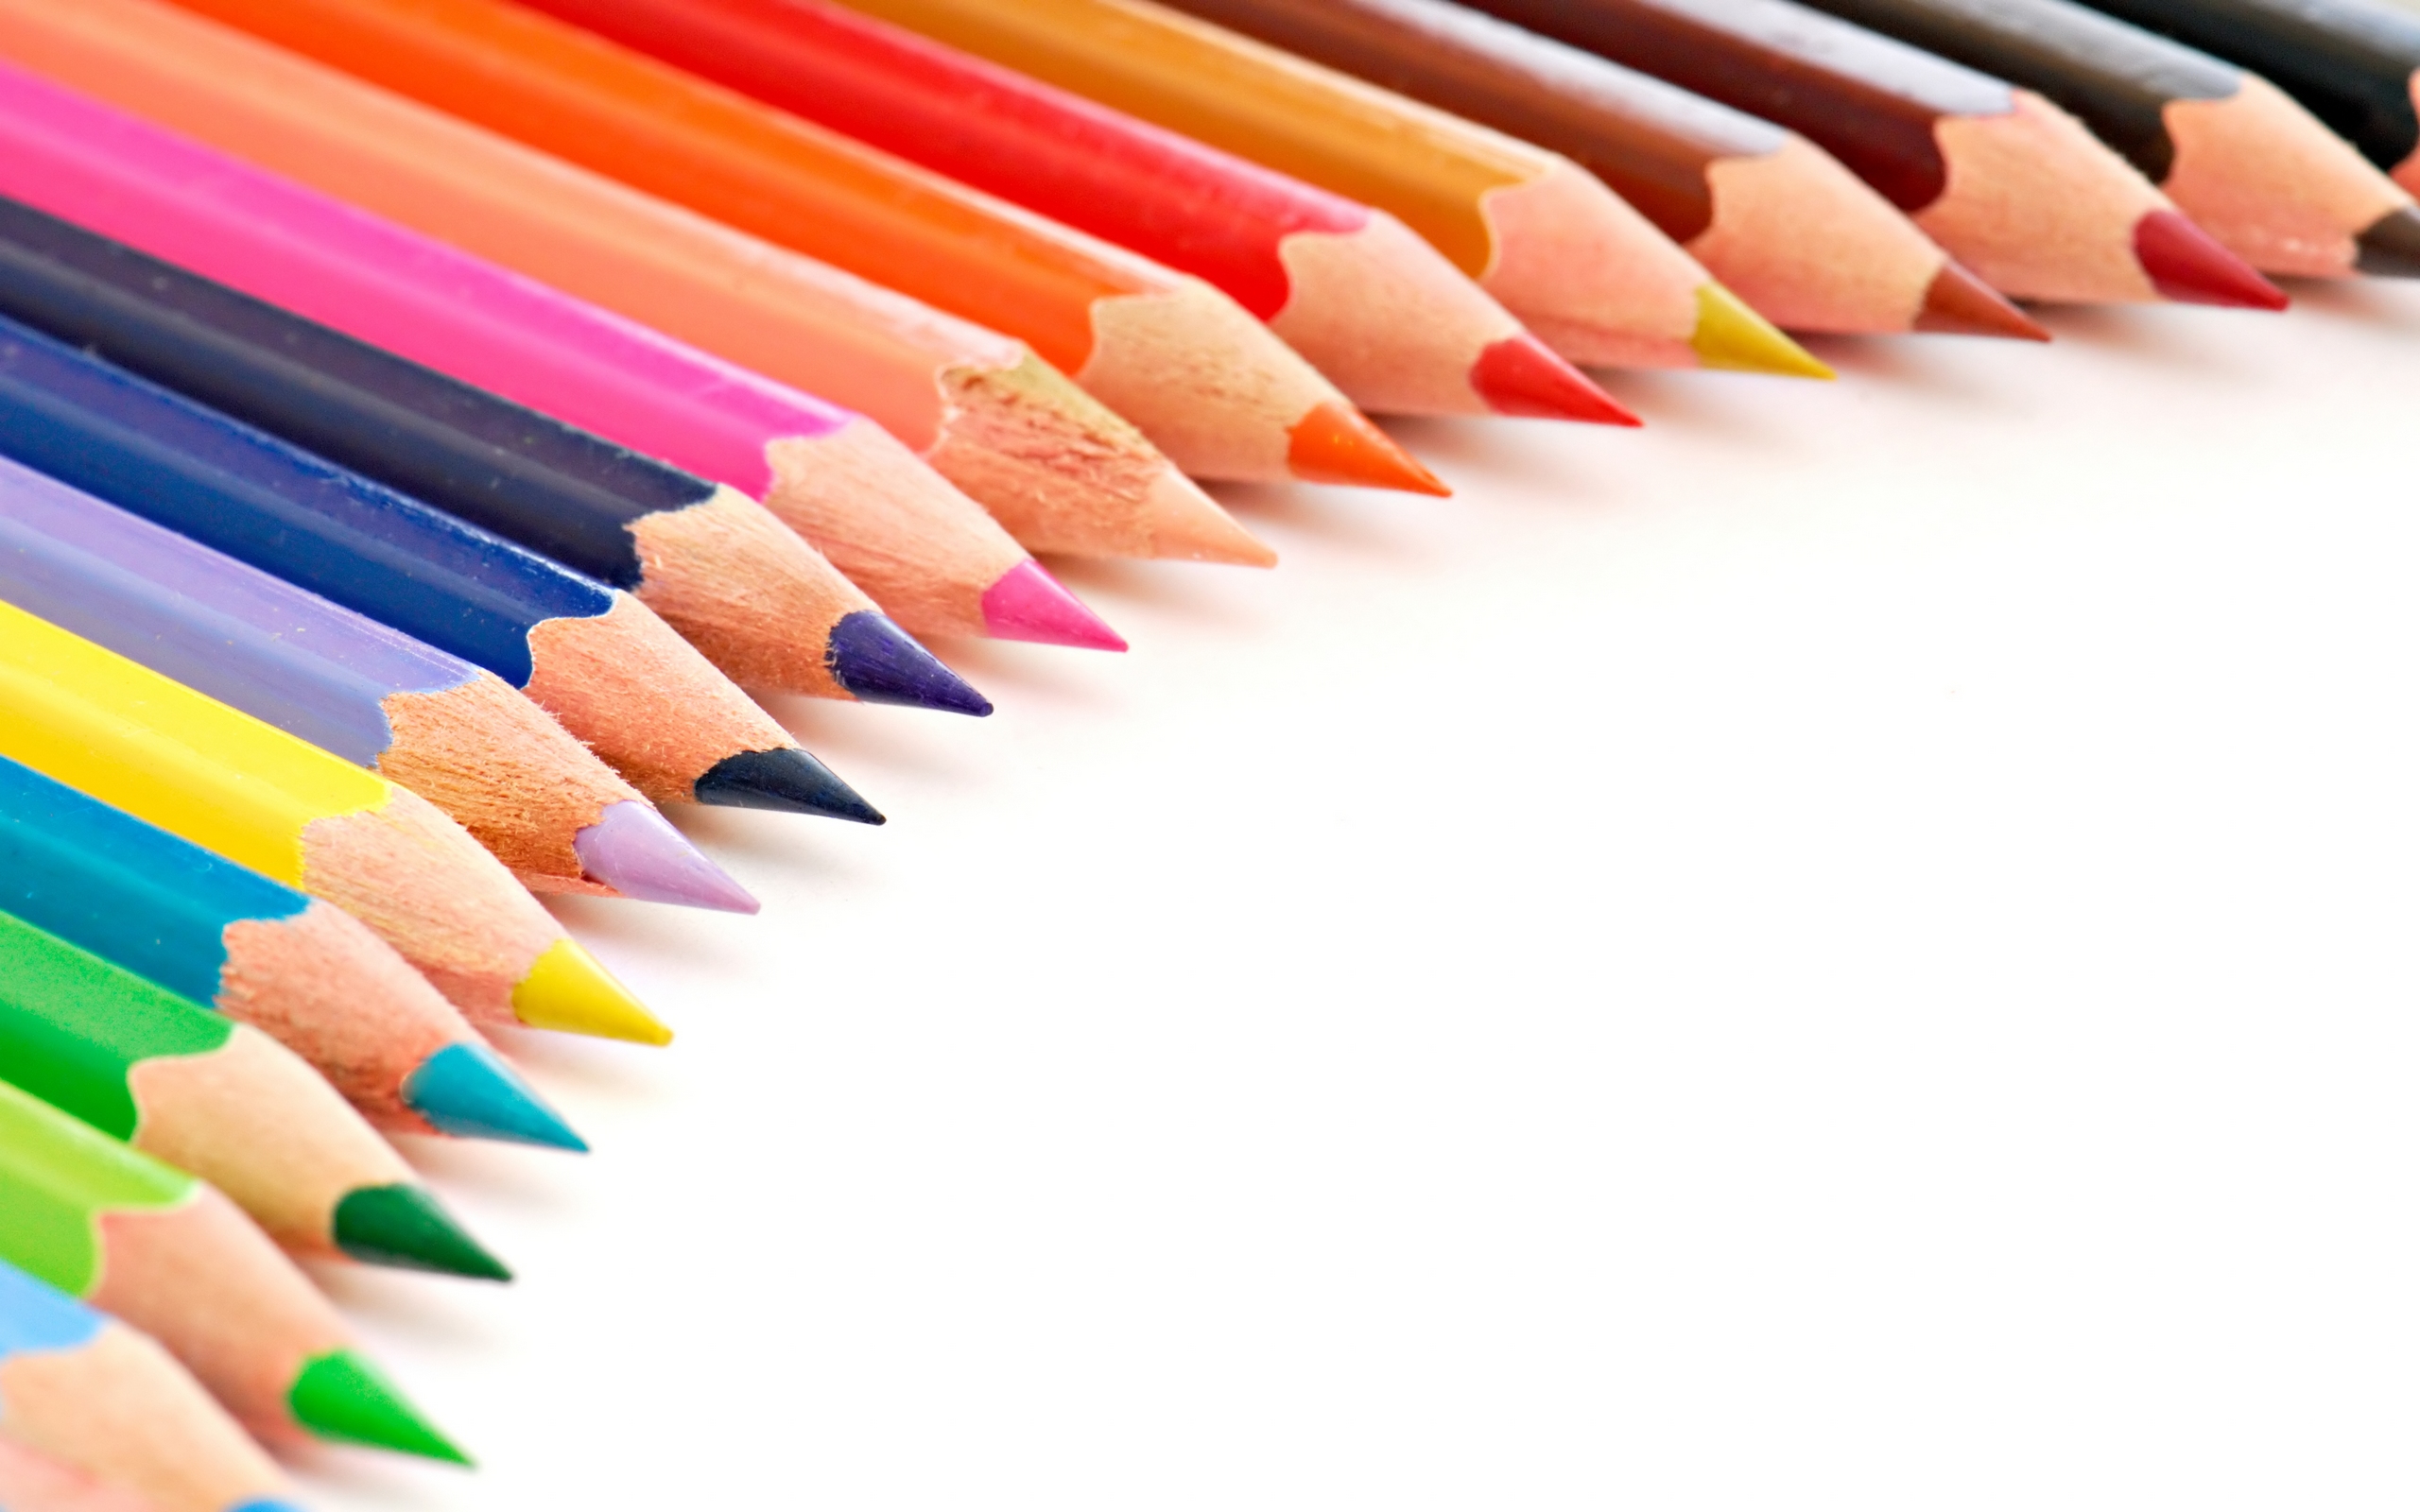 colored-pencils-pencils-wallpaper-24173416-fanpop